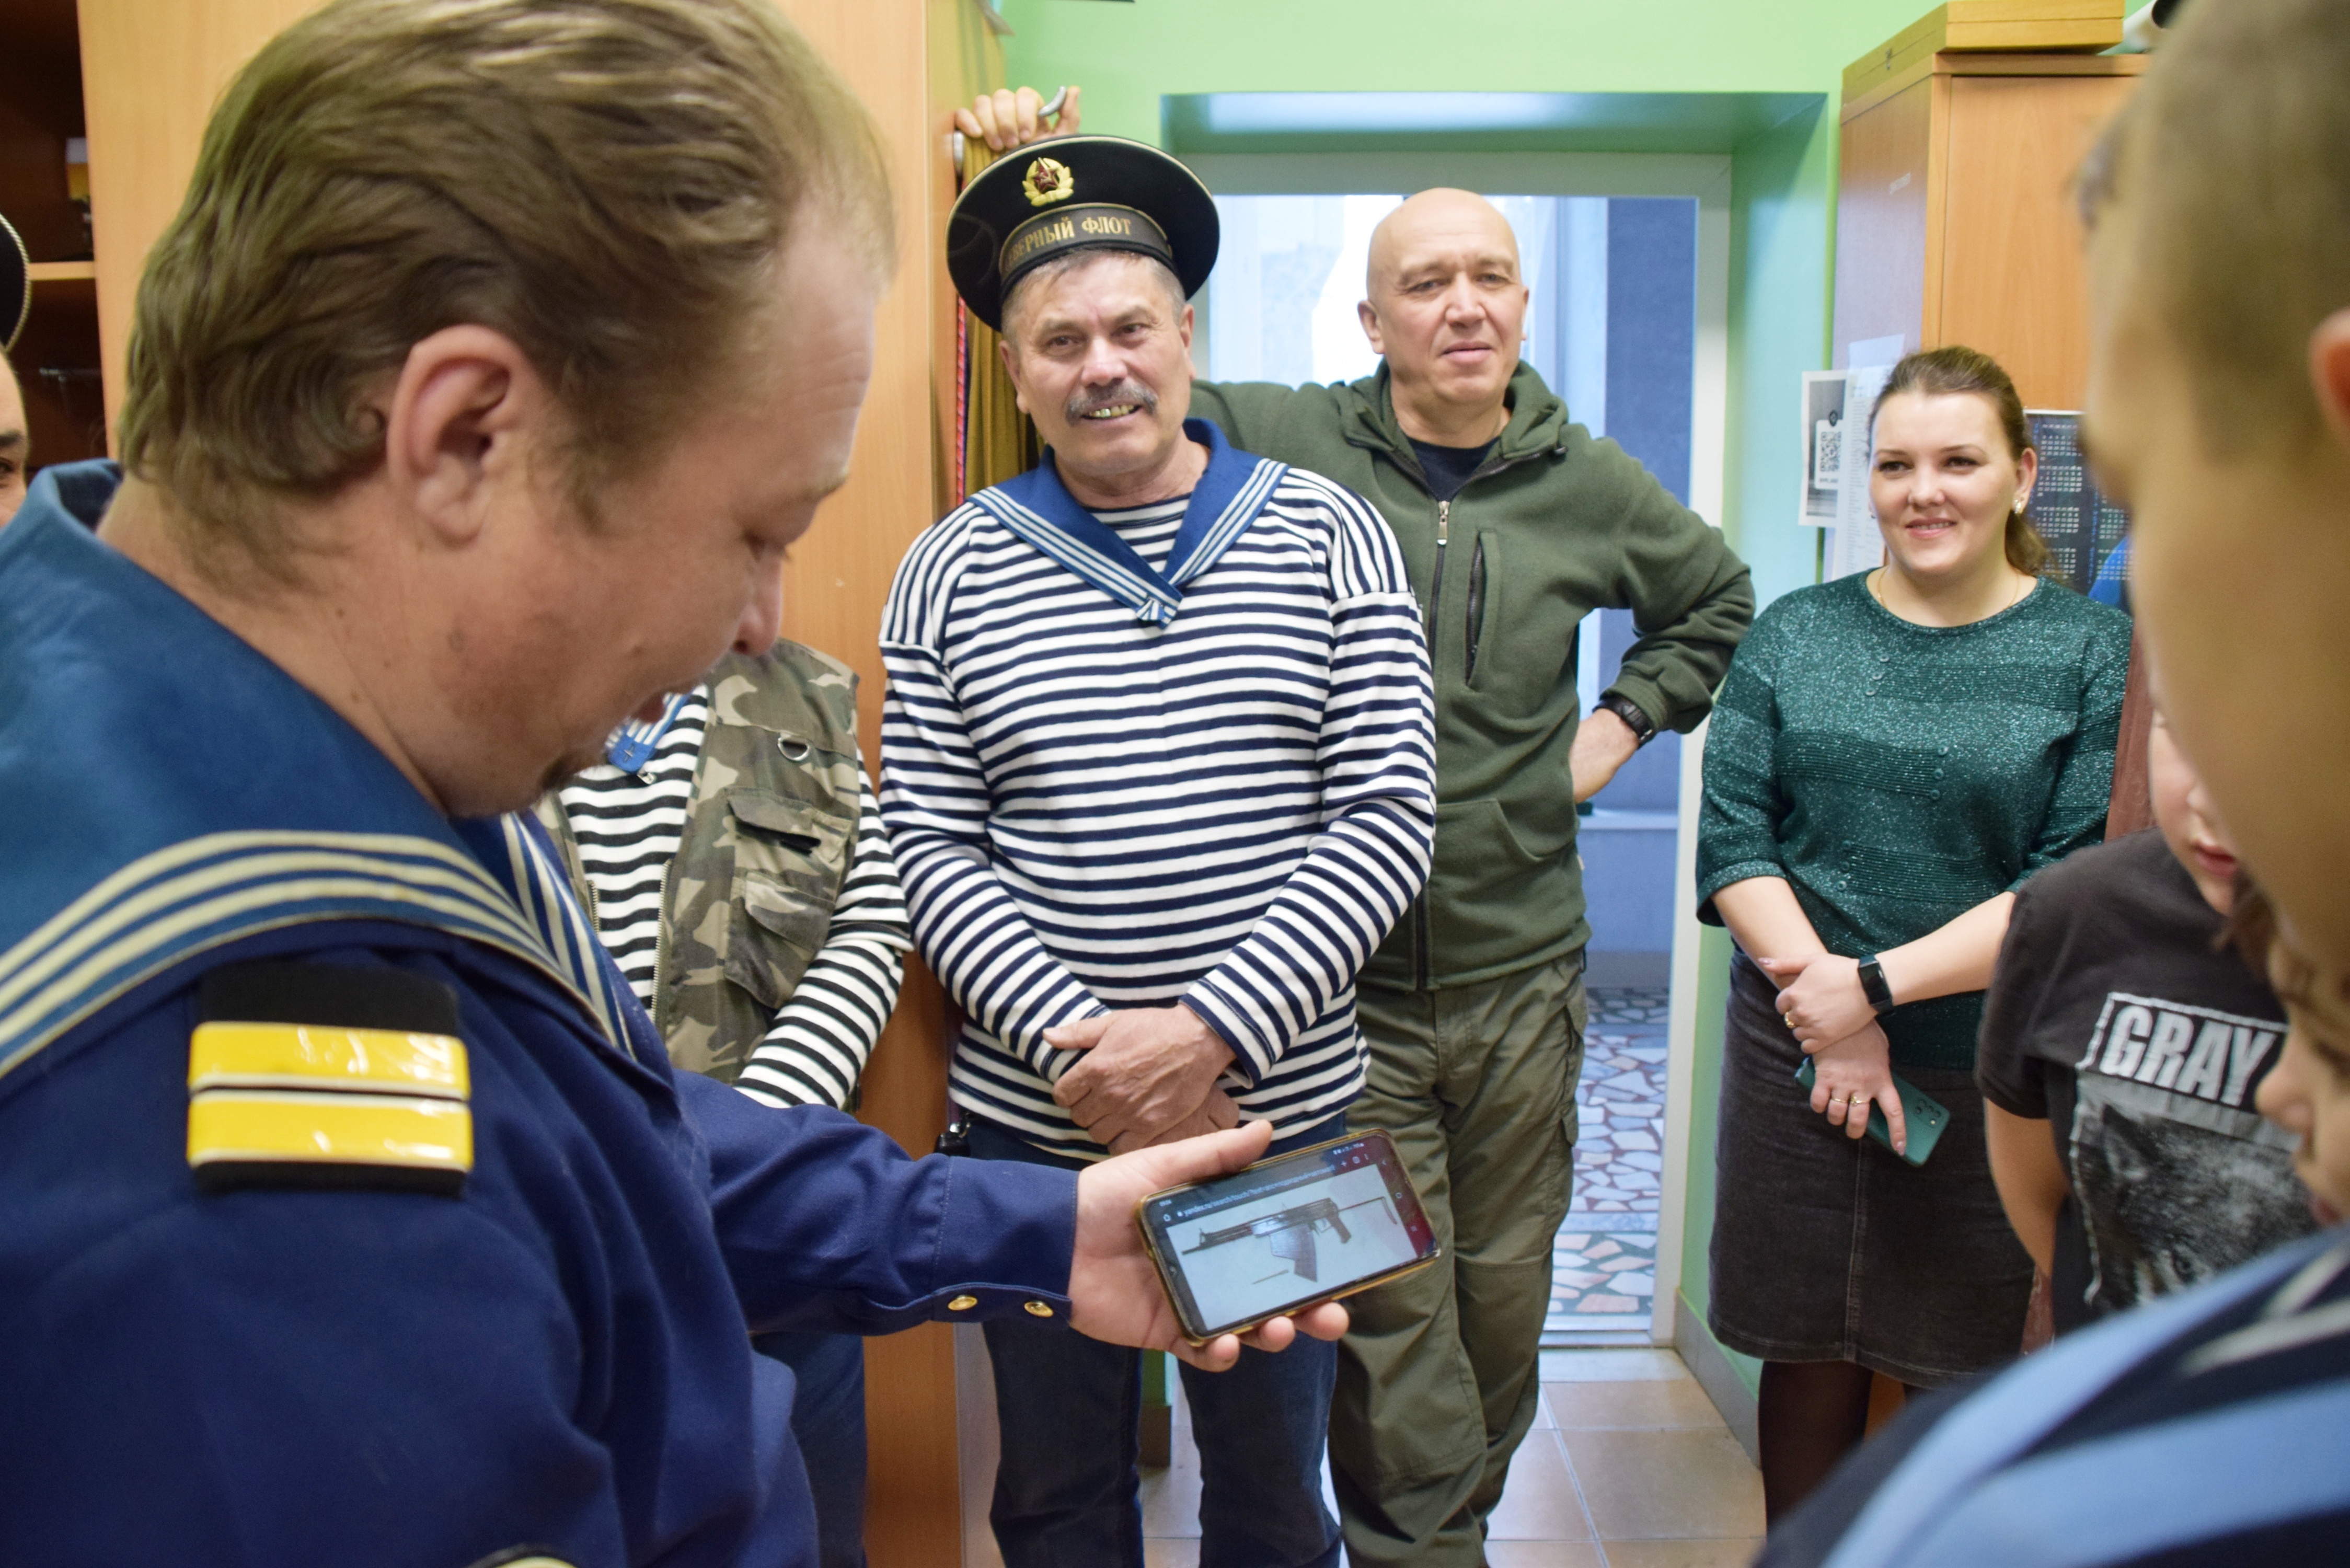 Ветераны ВМФ сегодня побывали в гостях у ВПК «Батыр»